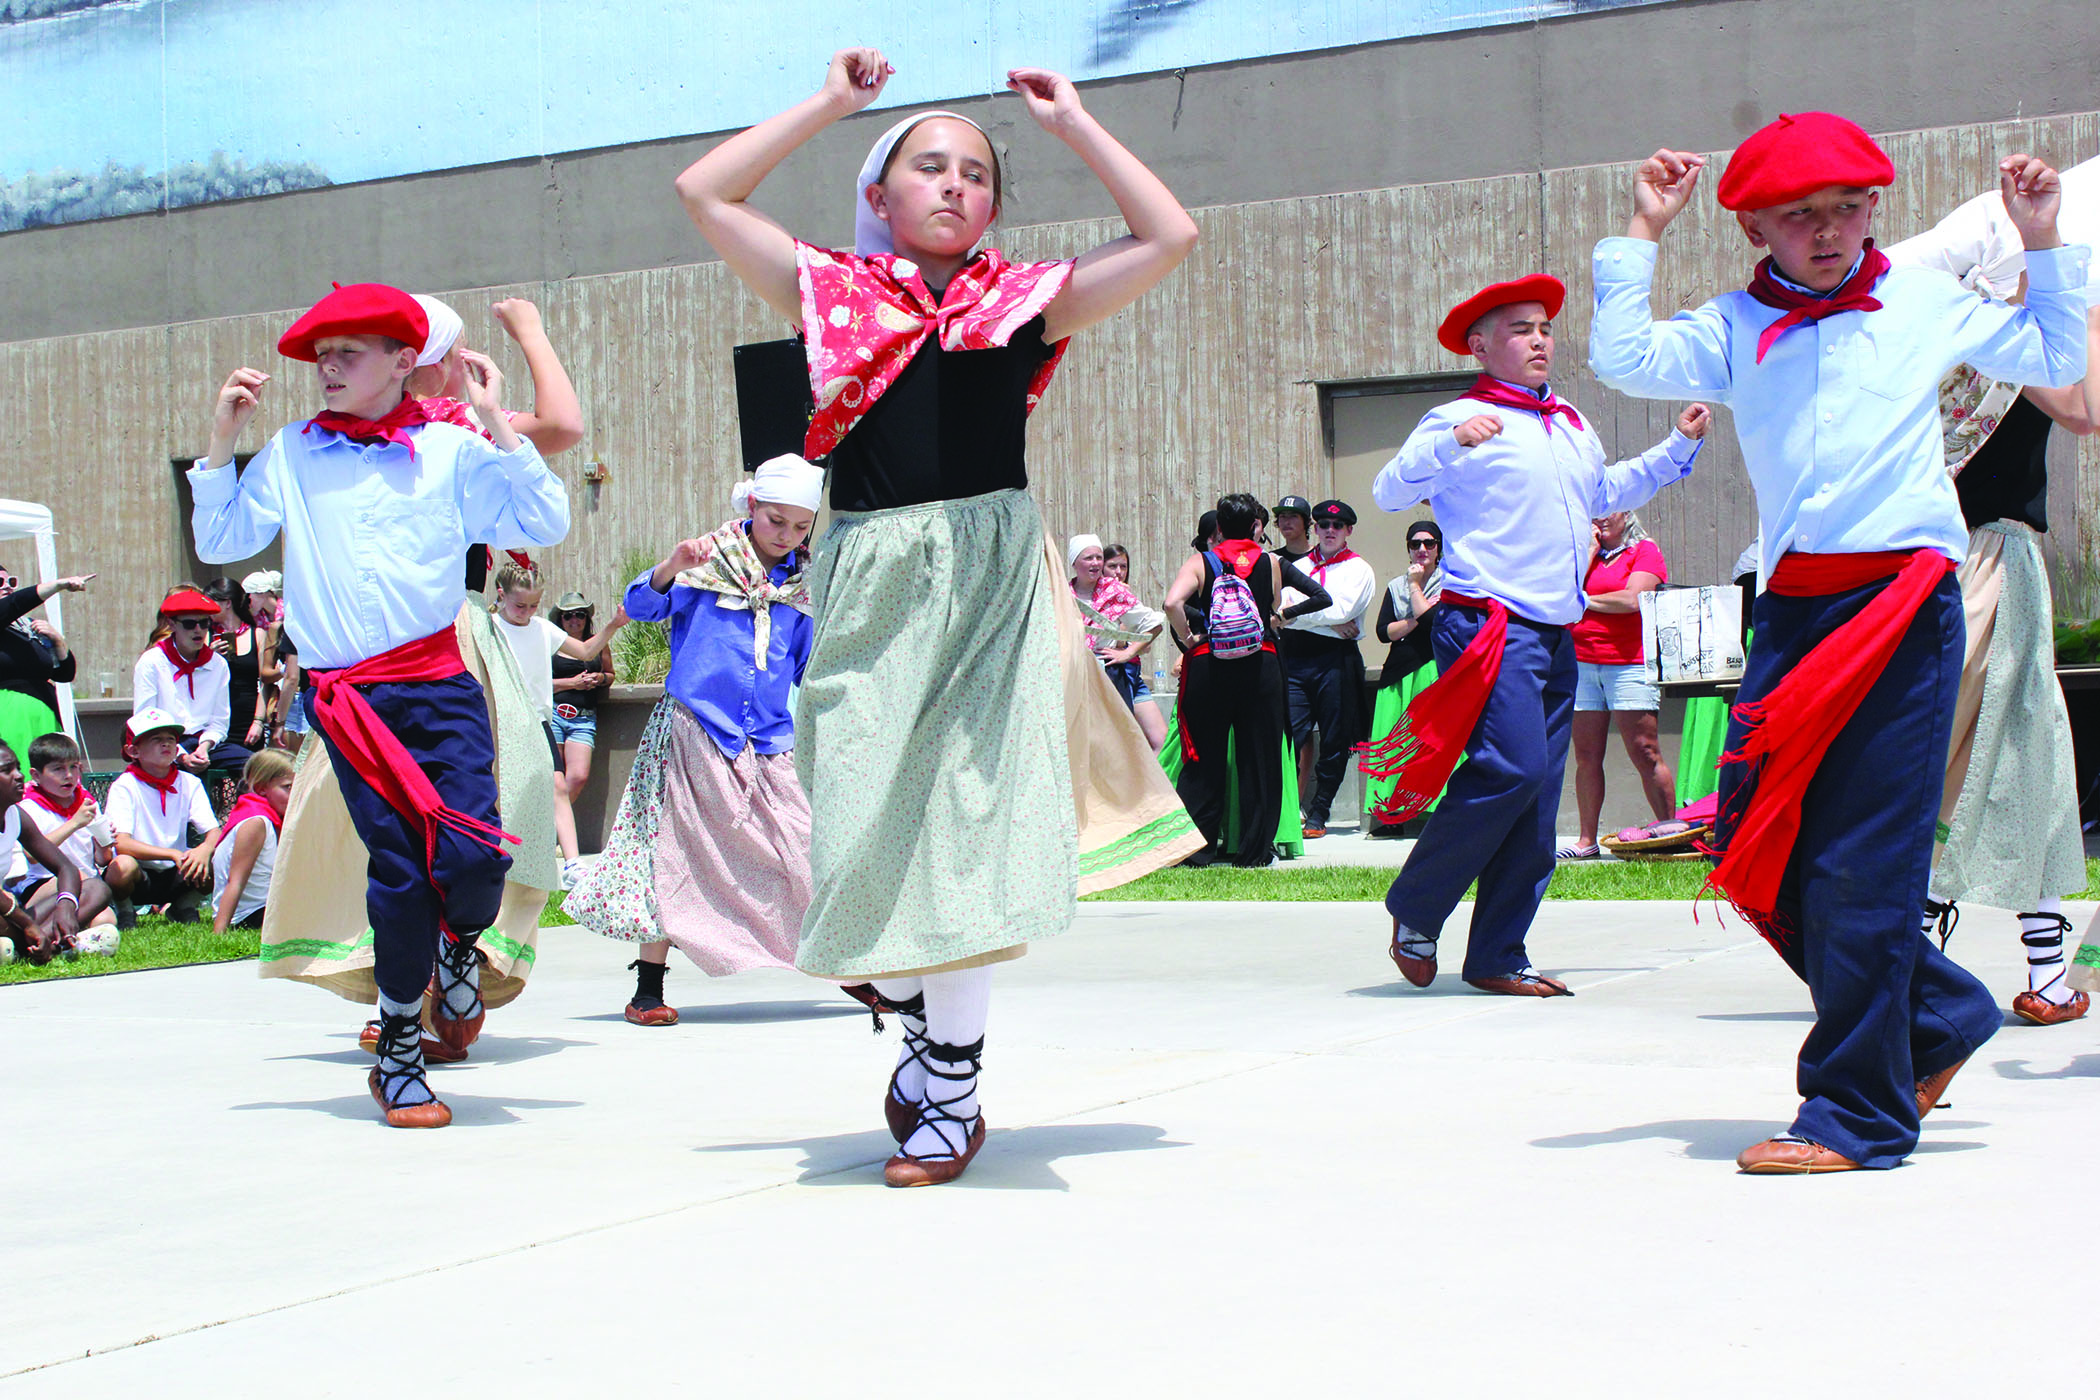 Ongi Etorri — Winnemucca celebrates Basque culture Great Basin Sun